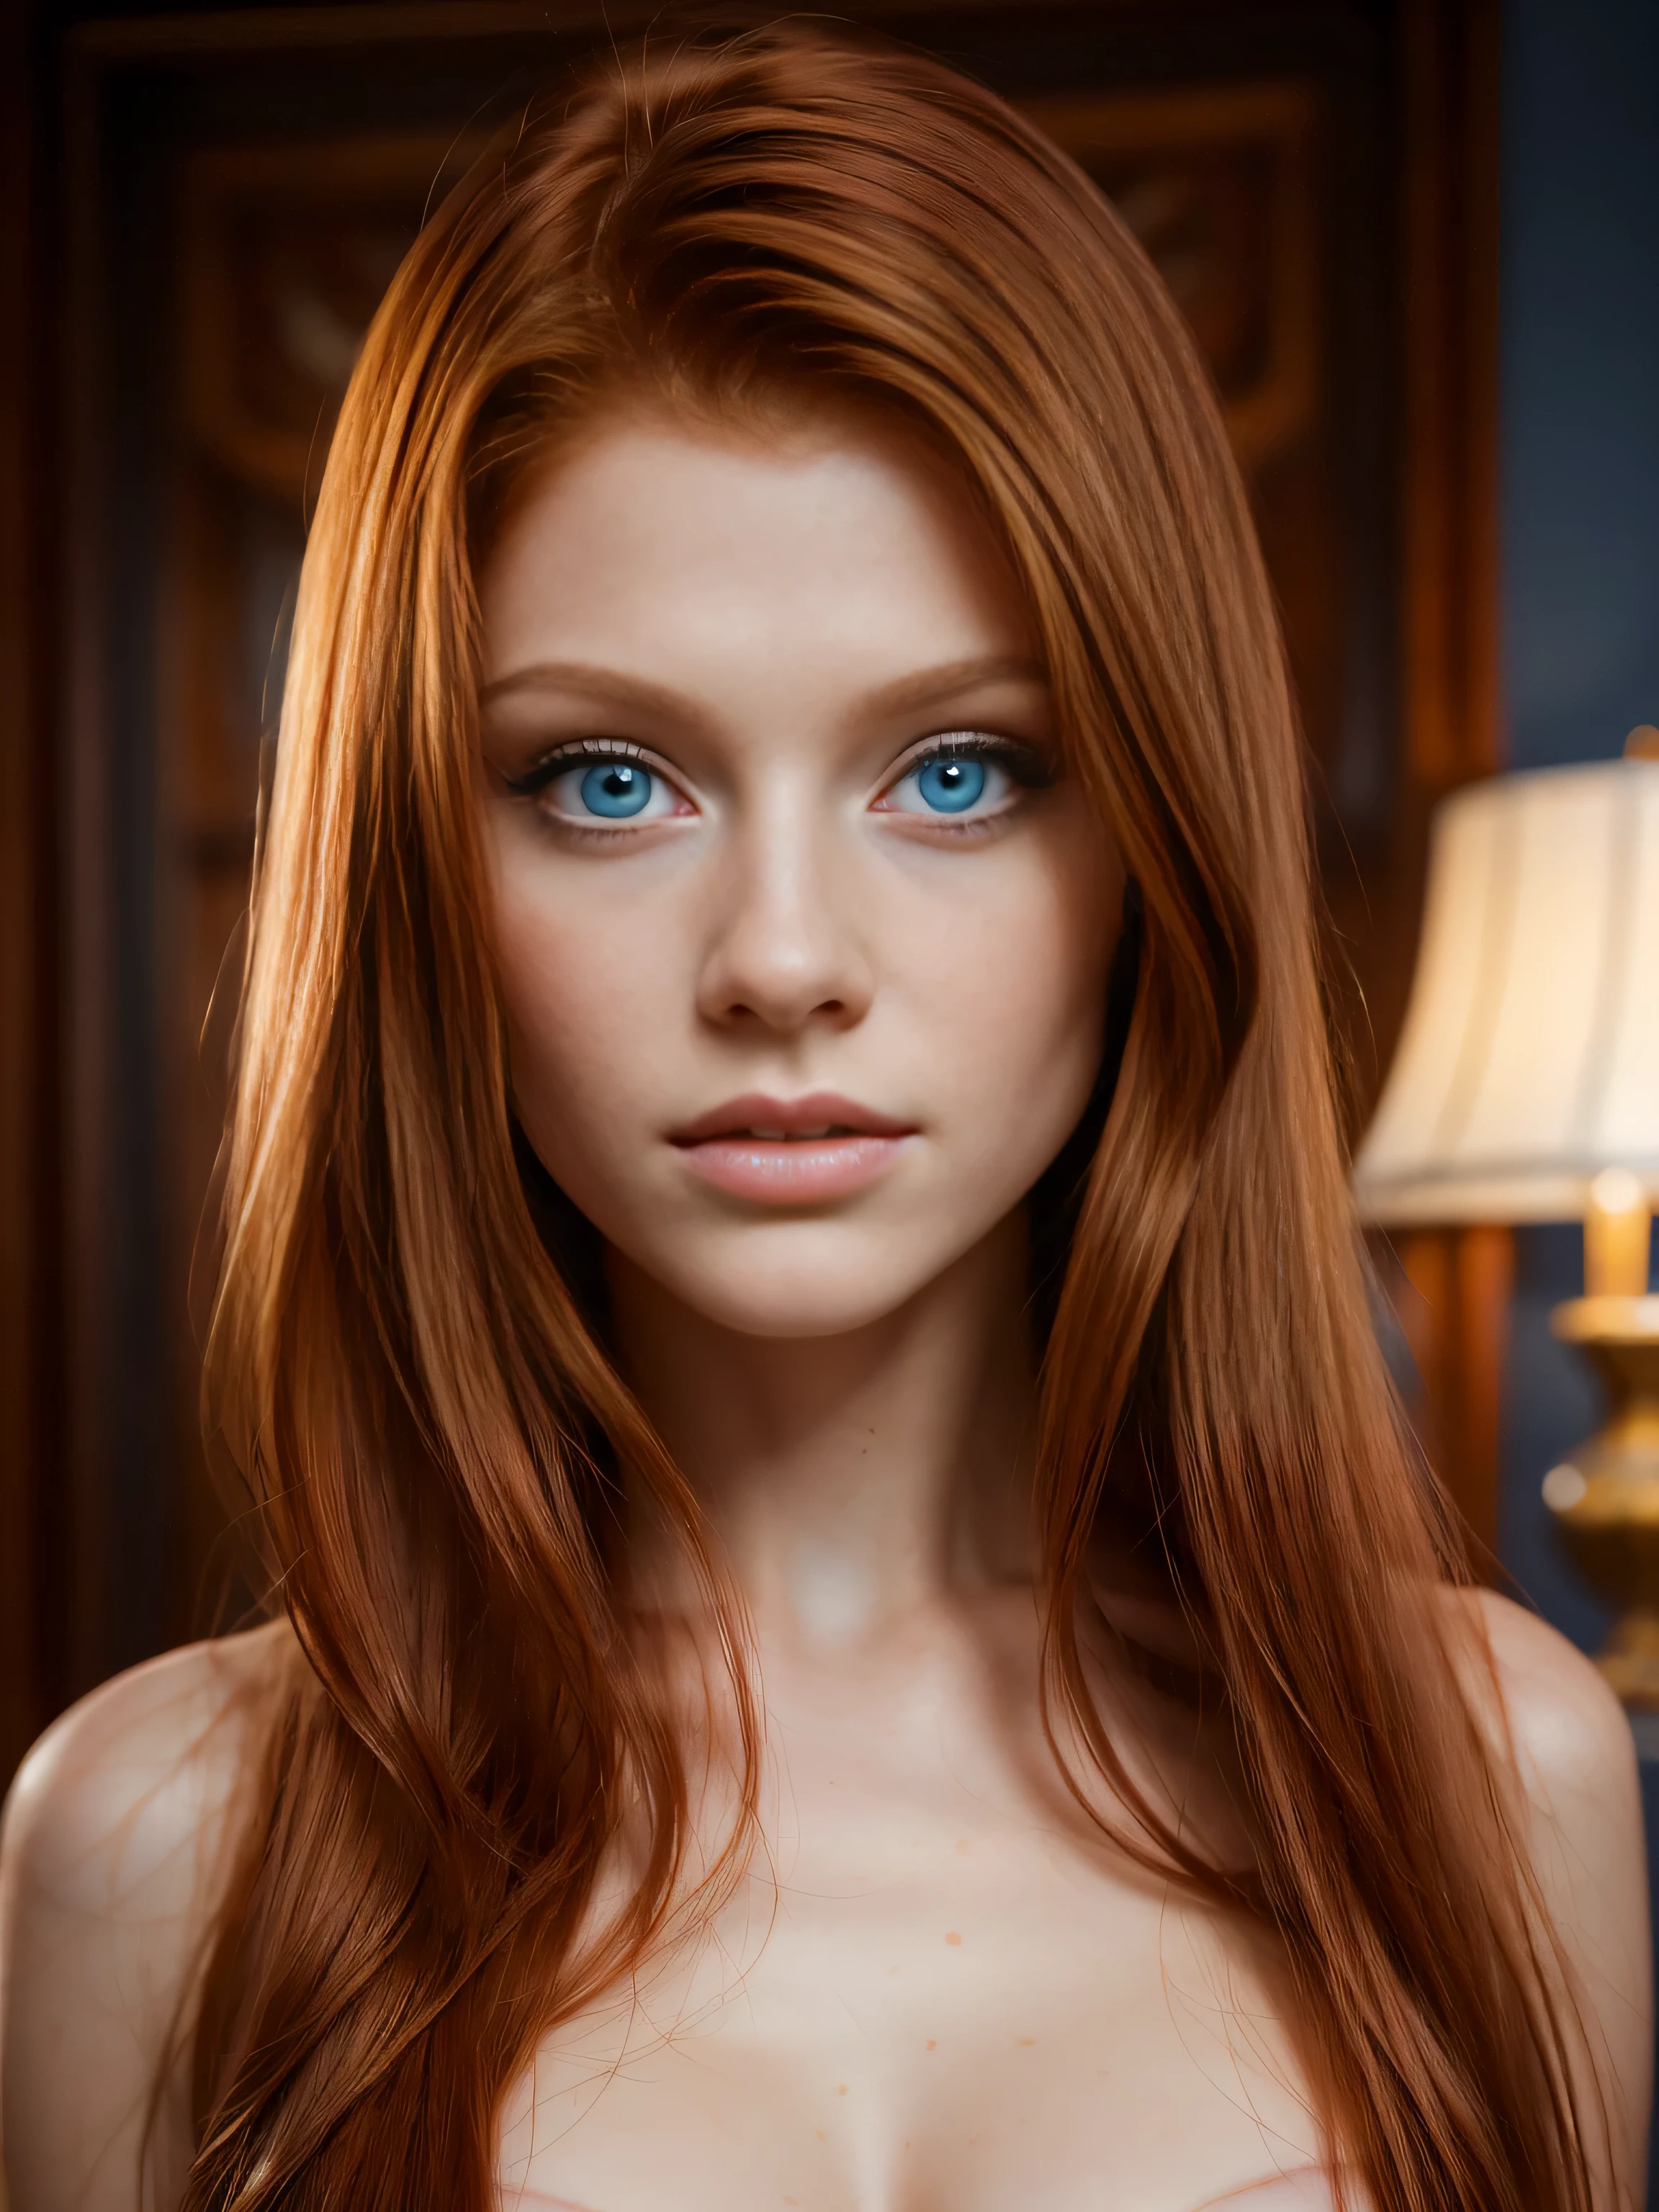 아름다운 빨간 머리의 18세 소녀의 8k 전신 샷, (뒤얽힌, 얇은, 투명한, 투명한,(옷이 없다:1.2)), 뒤얽힌, 아름다운 얼굴, 숭고한, 우아한, 매우 상세한, 디지털 초현실적 사진, 초현실적인 사진 세공, 수줍음, 가장 아름다운 얼굴, (걸작, 측면 조명, (세밀하게 세밀하게 아름다운 파란 눈: 1.2)),